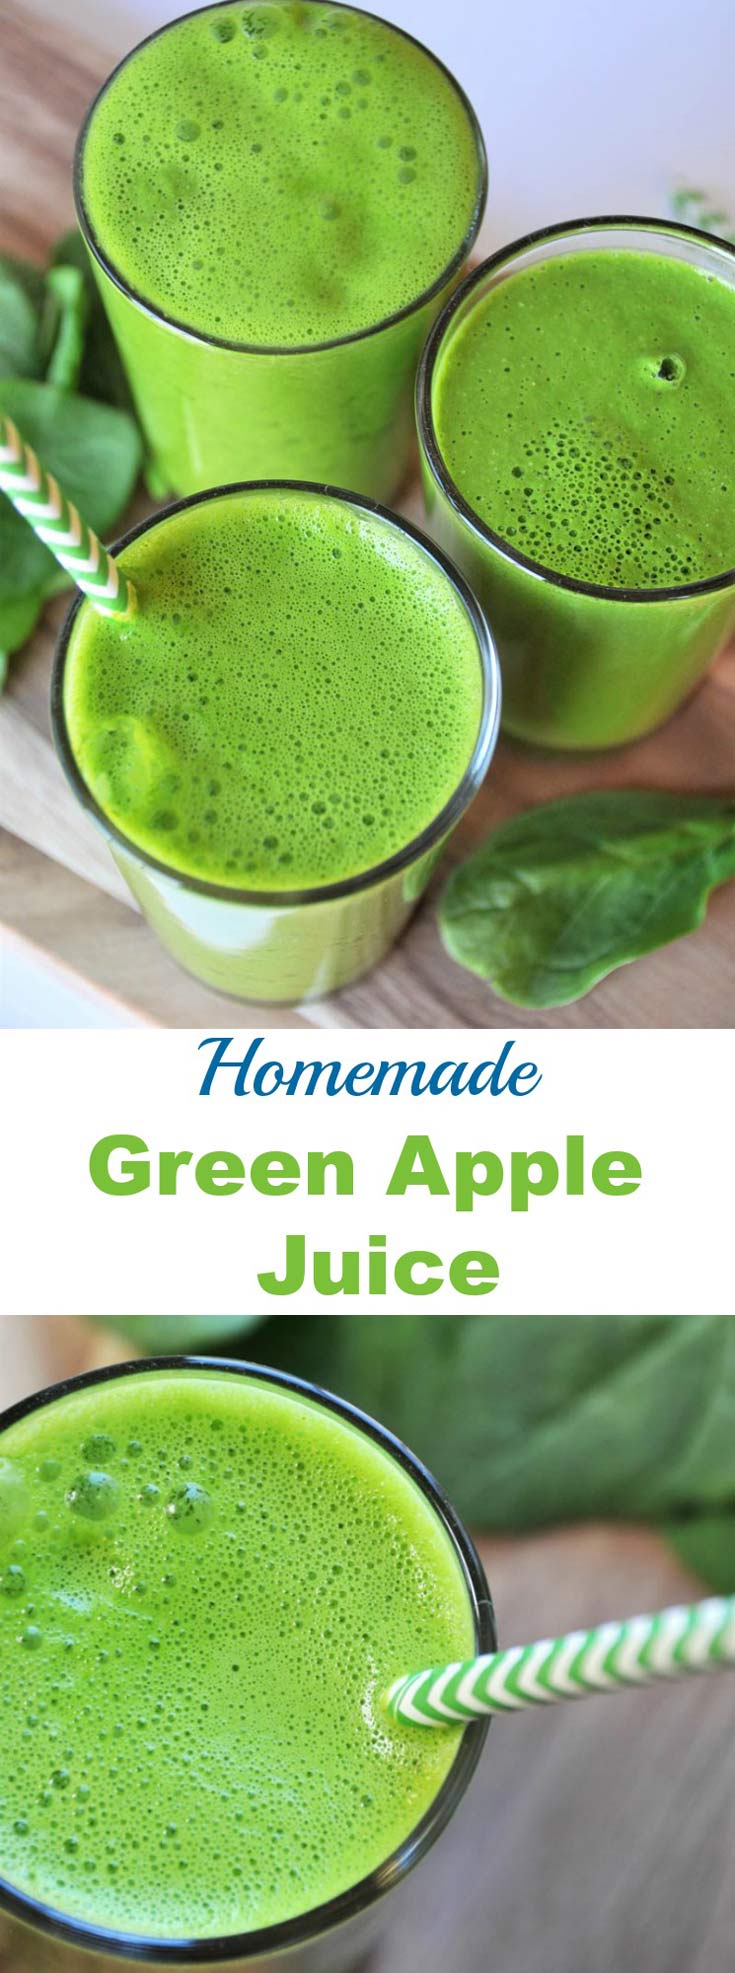 Suc verde făcut în casă cu 5 ingrediente, cu spanac, măr, lămâie și turmeric. Un mod sănătos și gustos de a vă bea legumele.